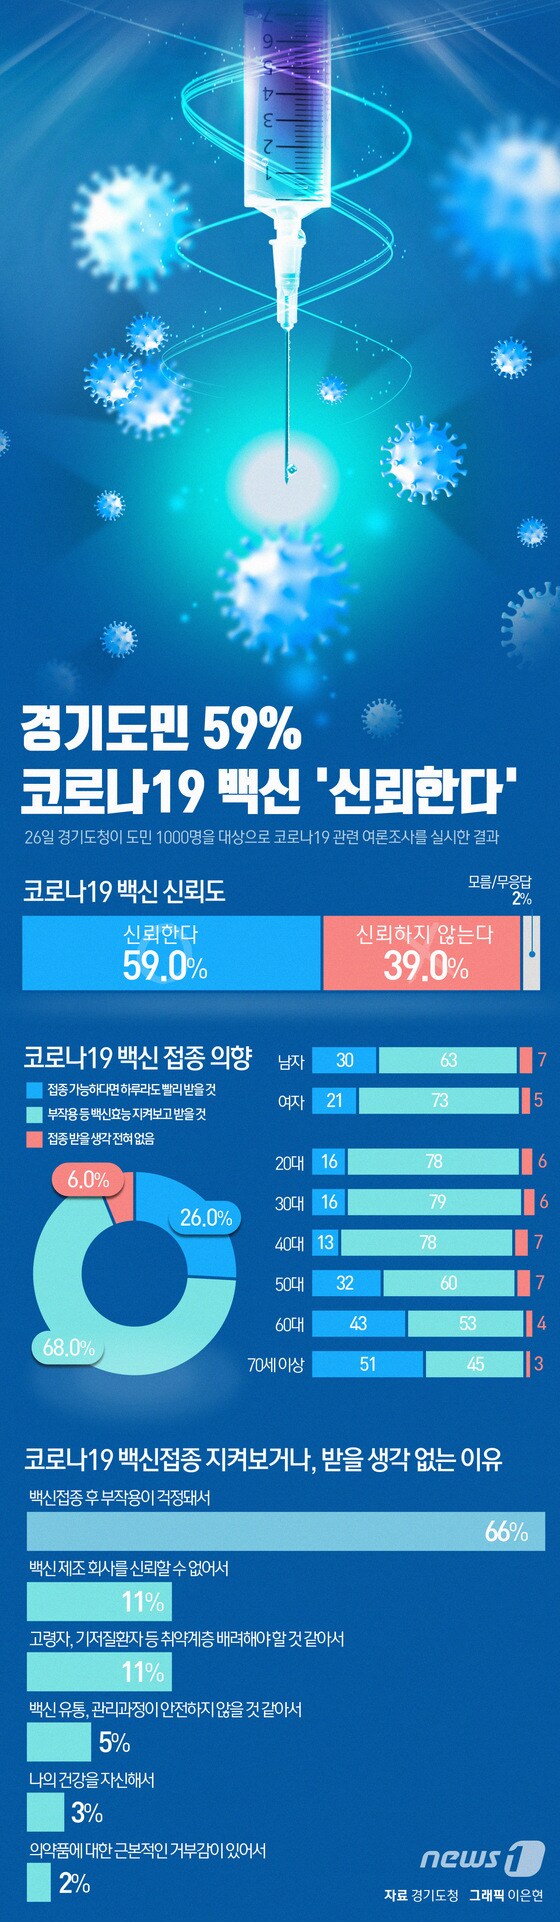 [그래픽뉴스] 경기도민 59% 코로나19 백신 '신뢰한다'